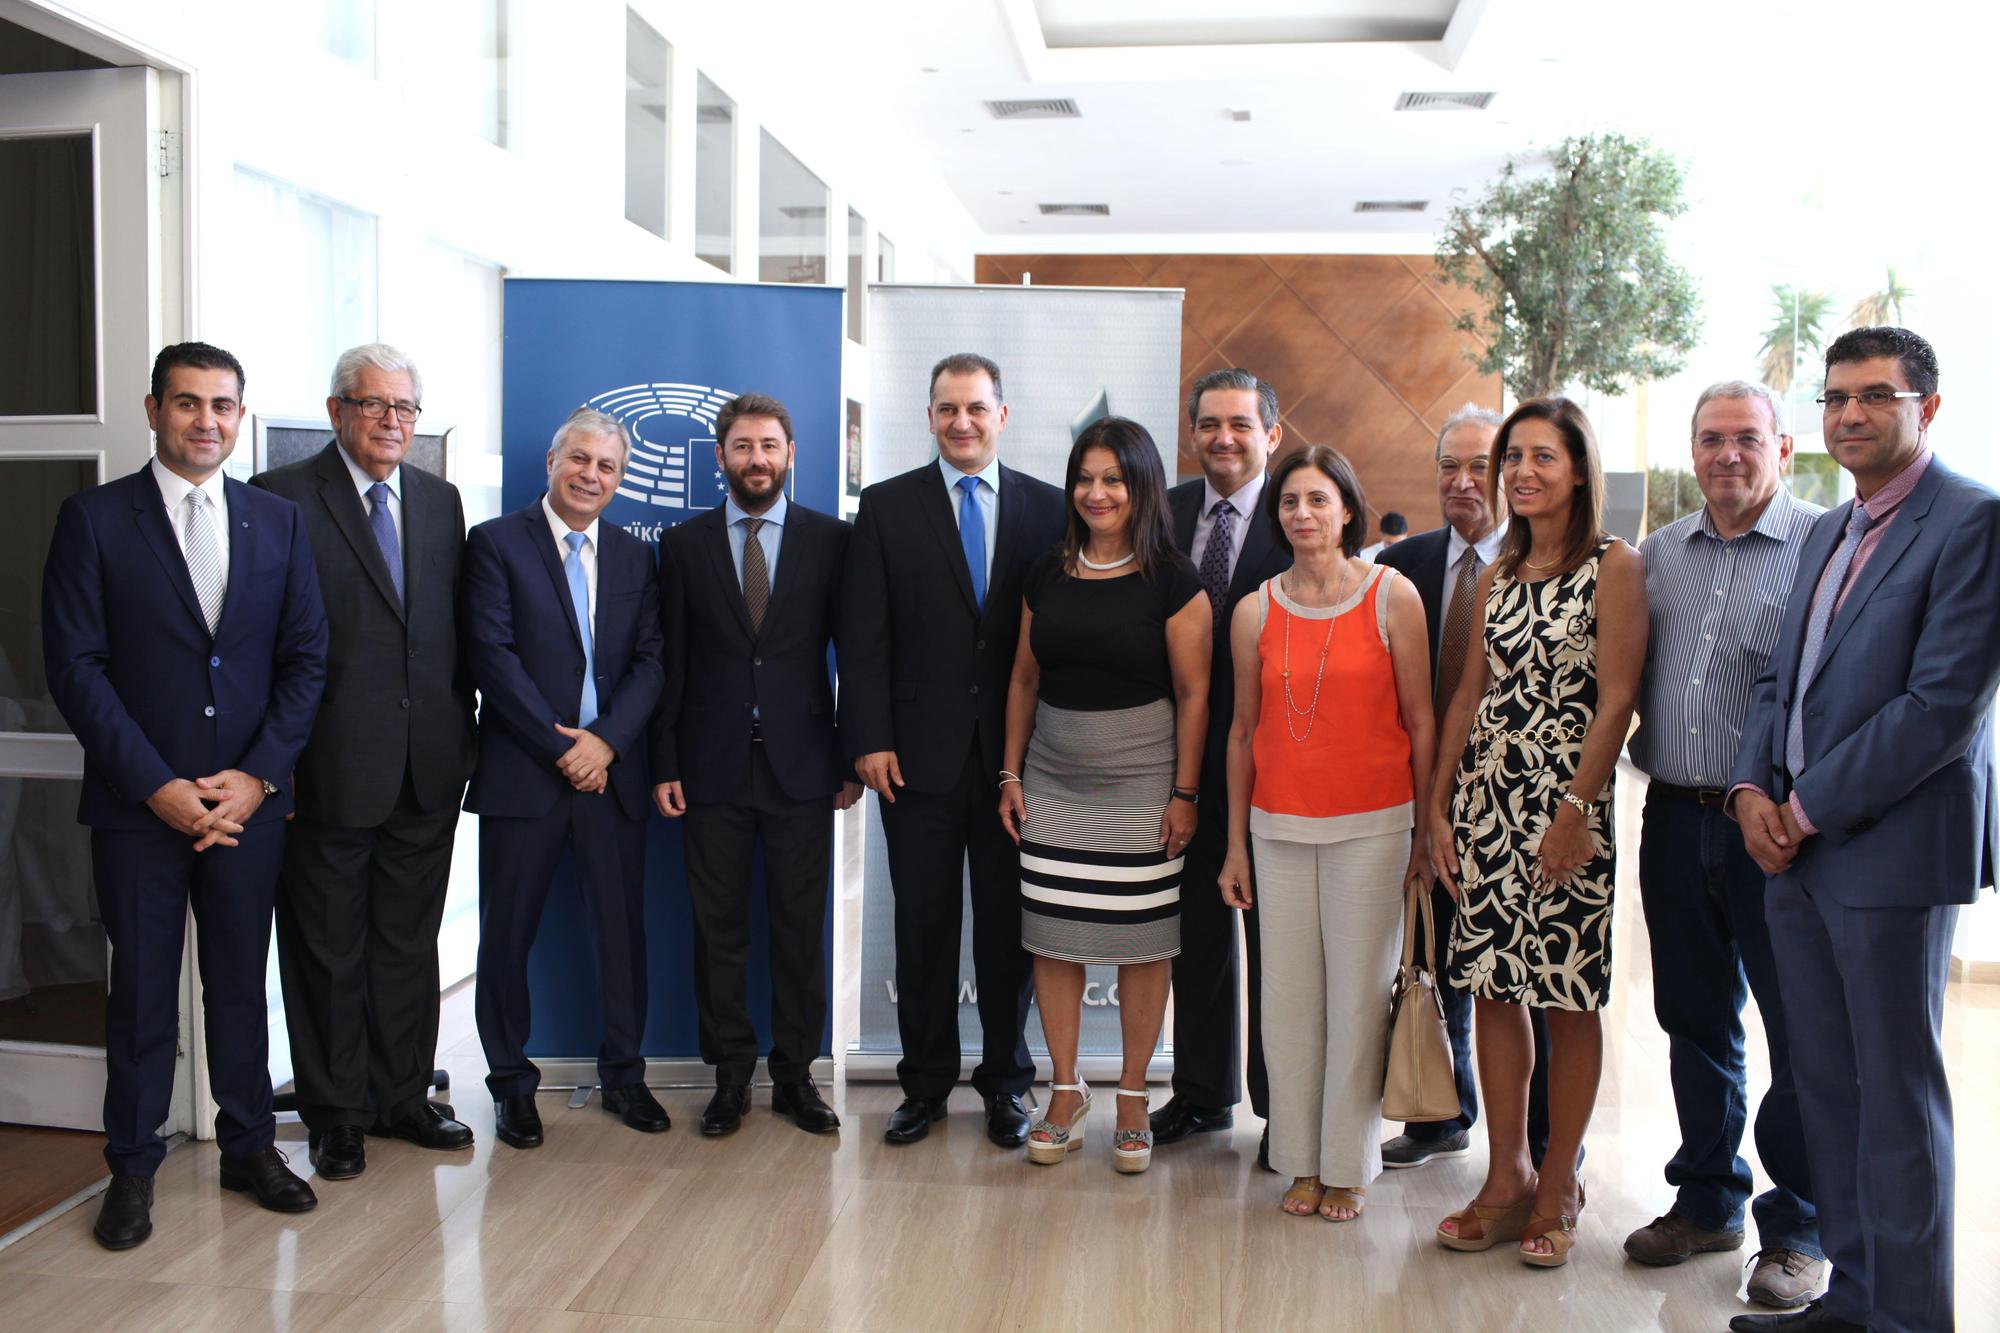 Ο Νίκος Ανδρουλάκης με τον Ευρωβουλετή του ΕΛΚ, Λευτέρη Χριστοφόρου, τον Υπουργό Εμπορίου Βιομηχανίας & Τουρισμού Κύπρου, κ. Γιώργο Λακκοτρύπη και τα μέλη του Γραφείου του Ευρωπαϊκού Κοινοβουλίου στην Κύπρο.